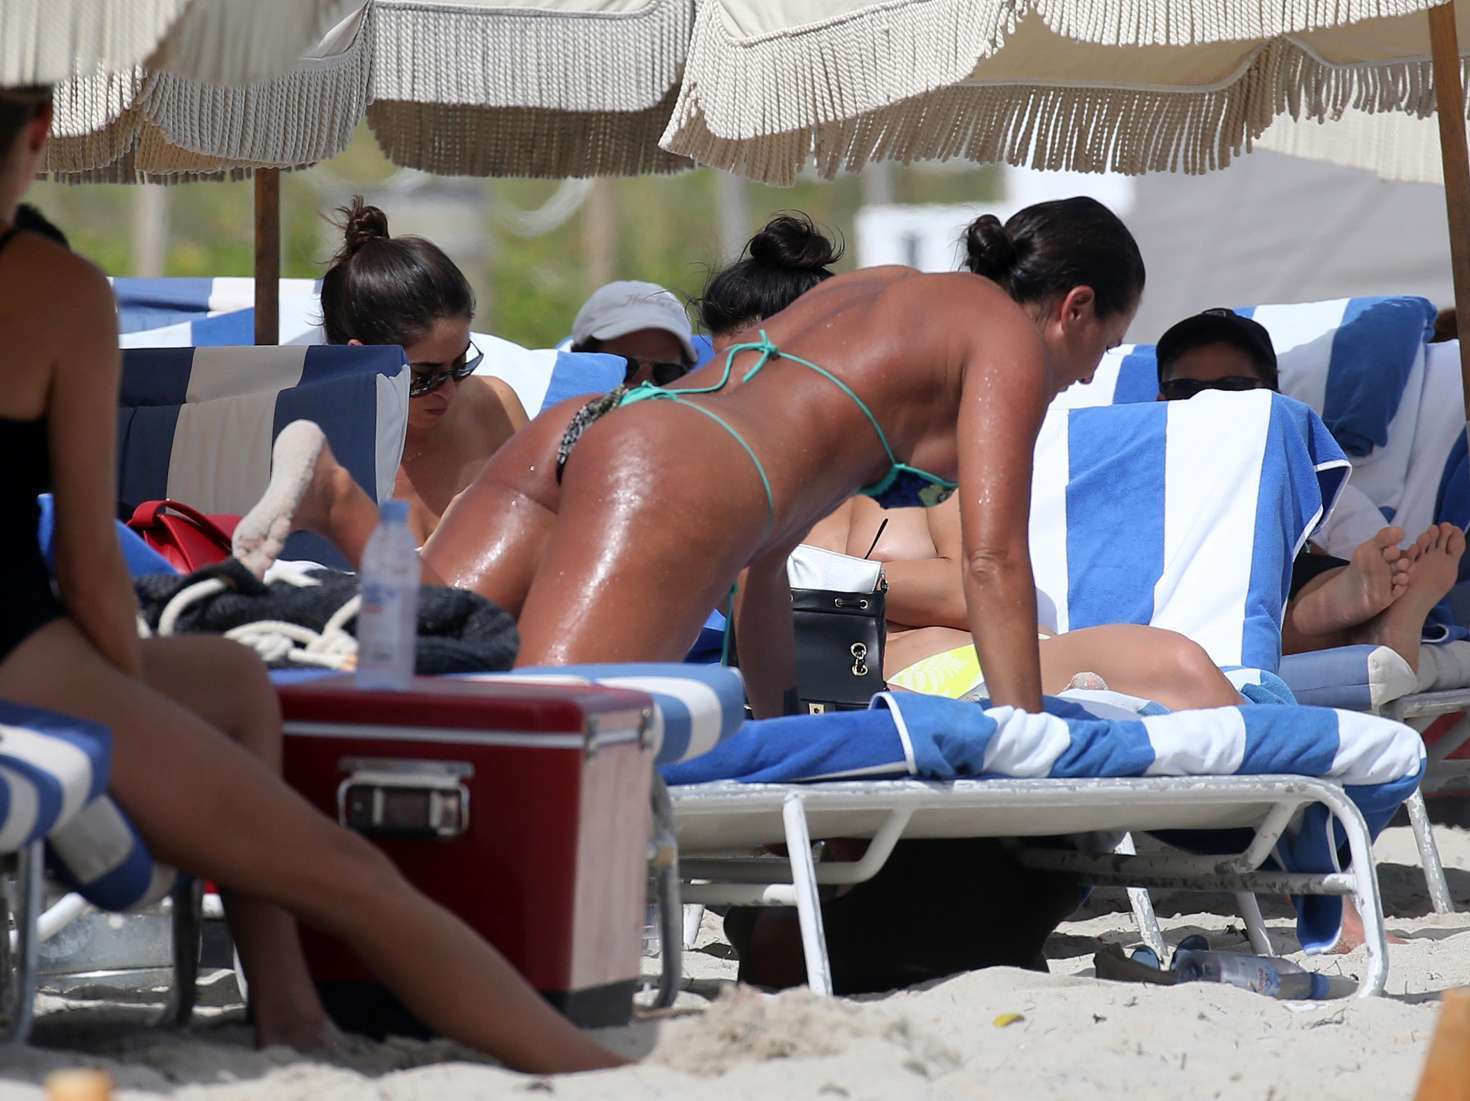 Eda Taspinar in Bikini on Miami Beach. 